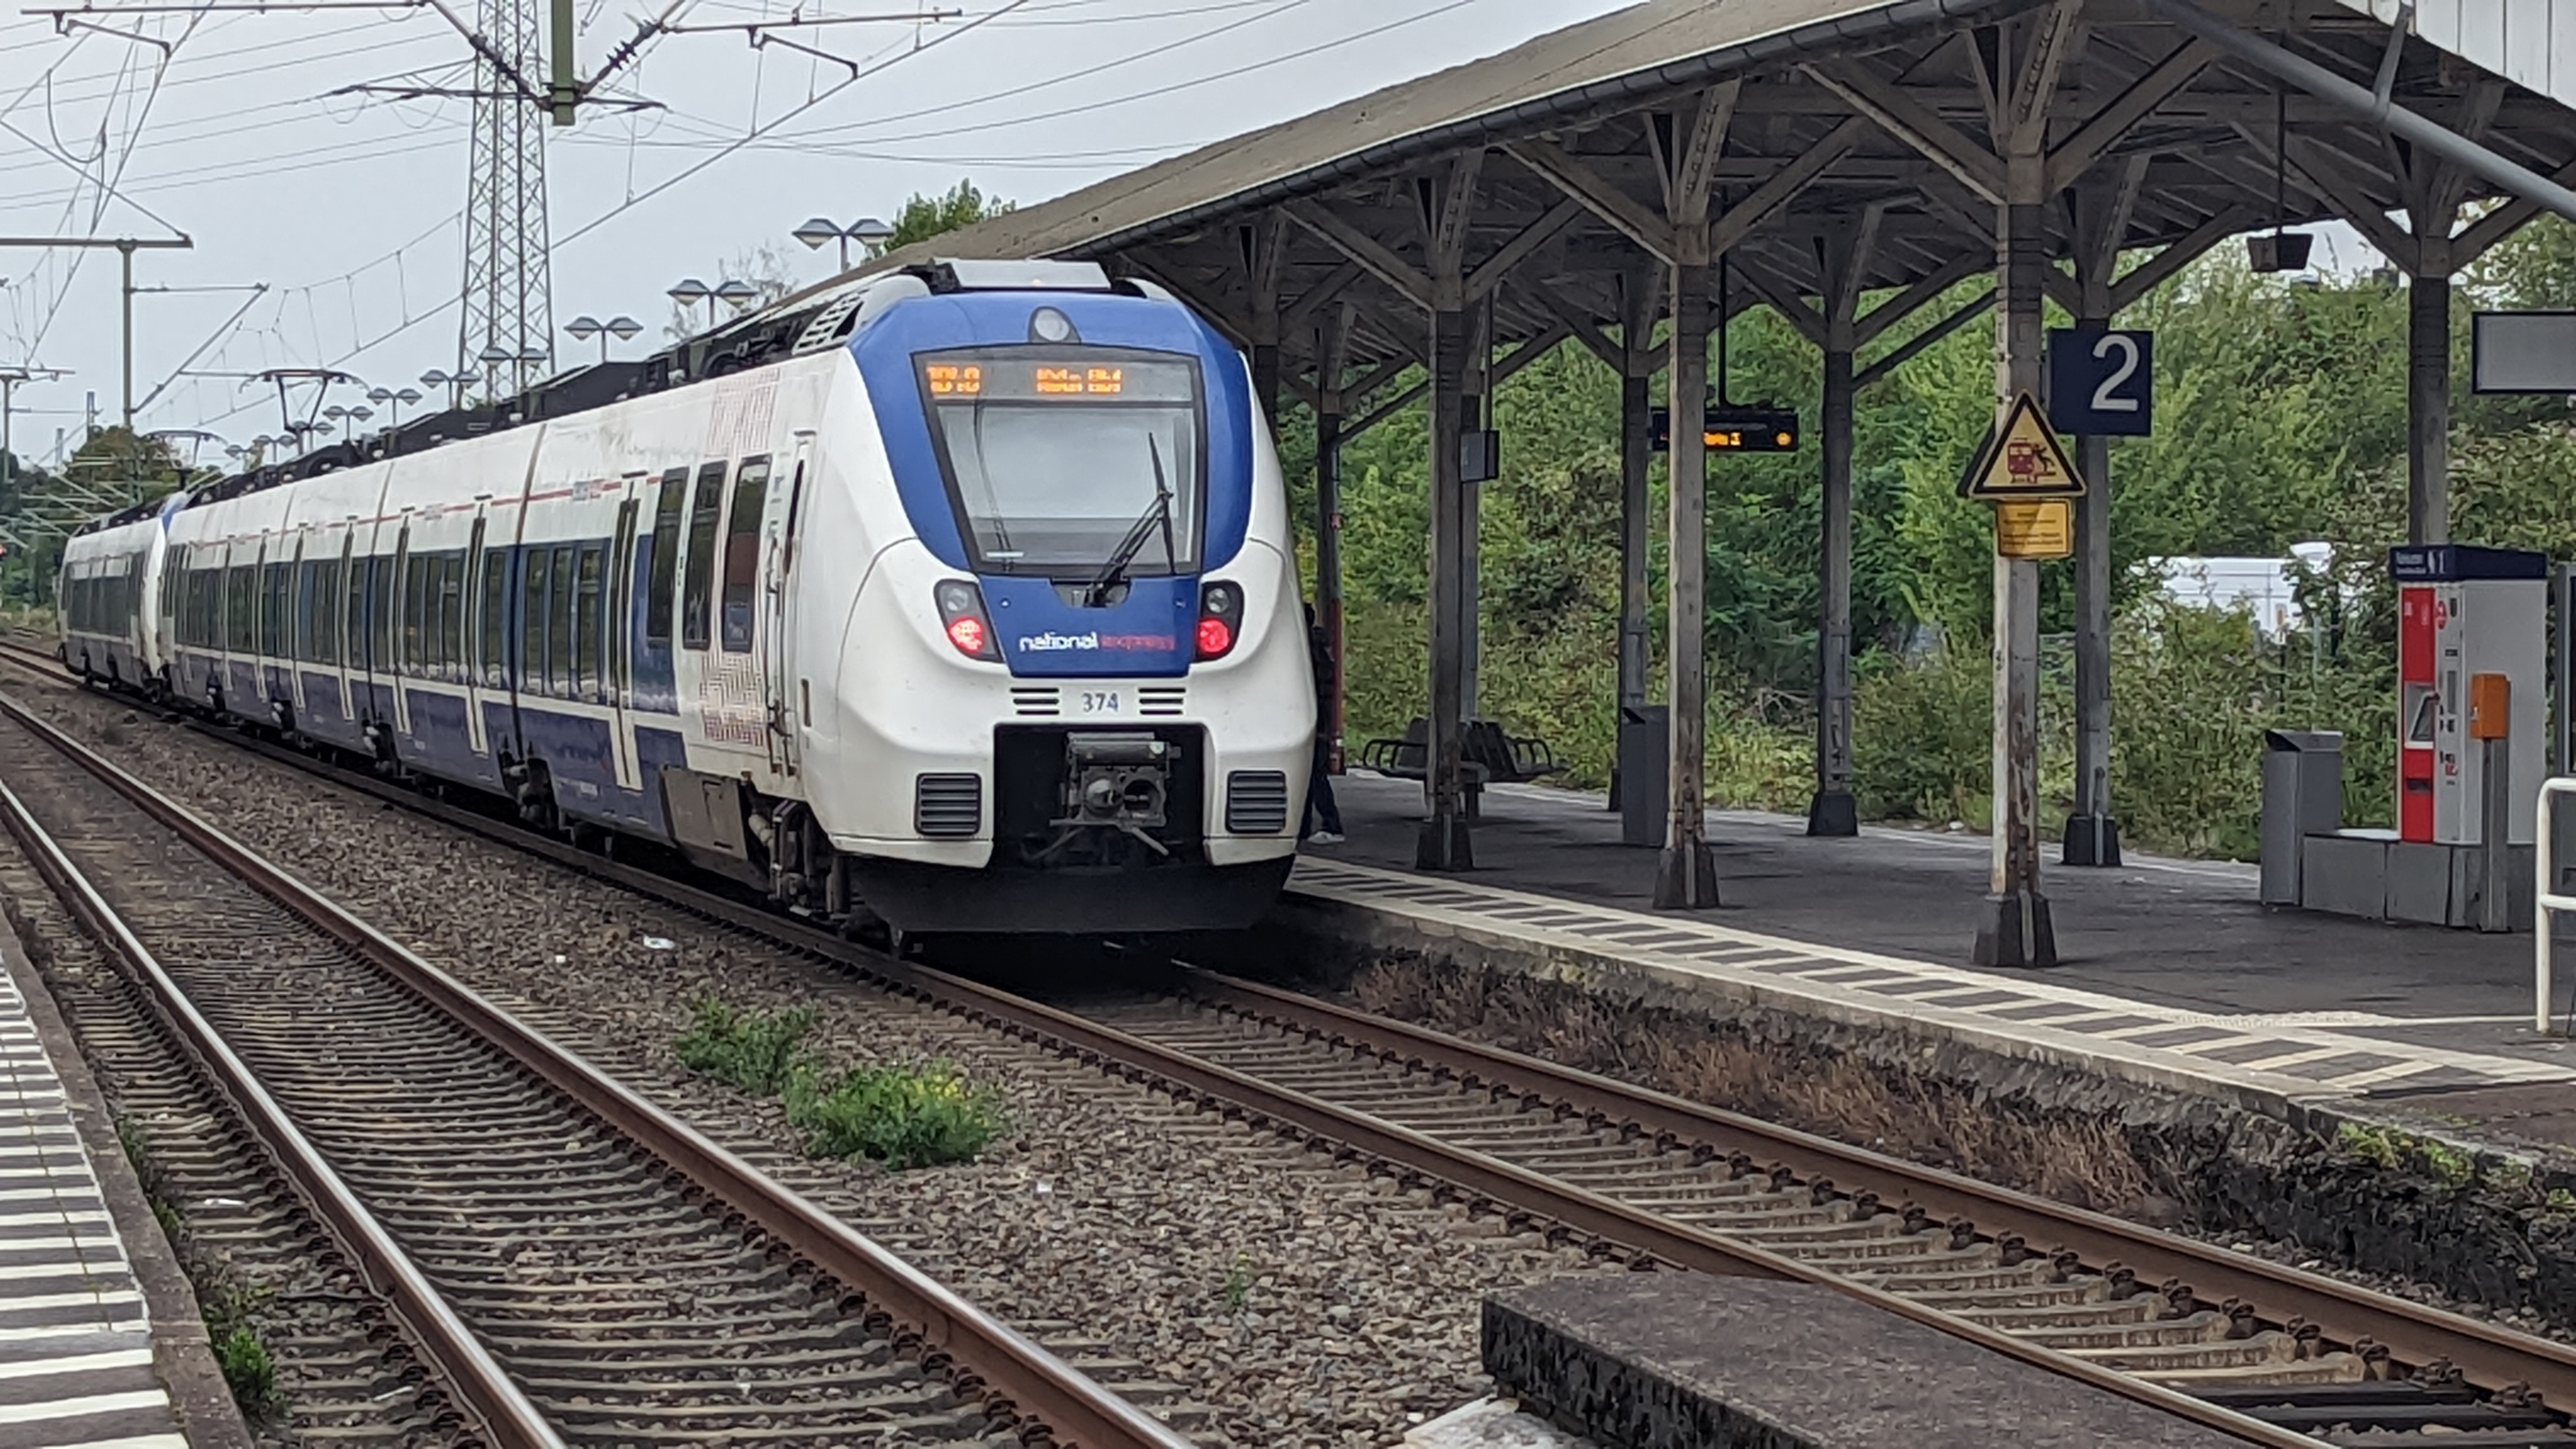 Der Zug steht an Gleis 2 vom Bahnhof Leverkusen-Manfort. Fahrgäste steigen ein und aus.